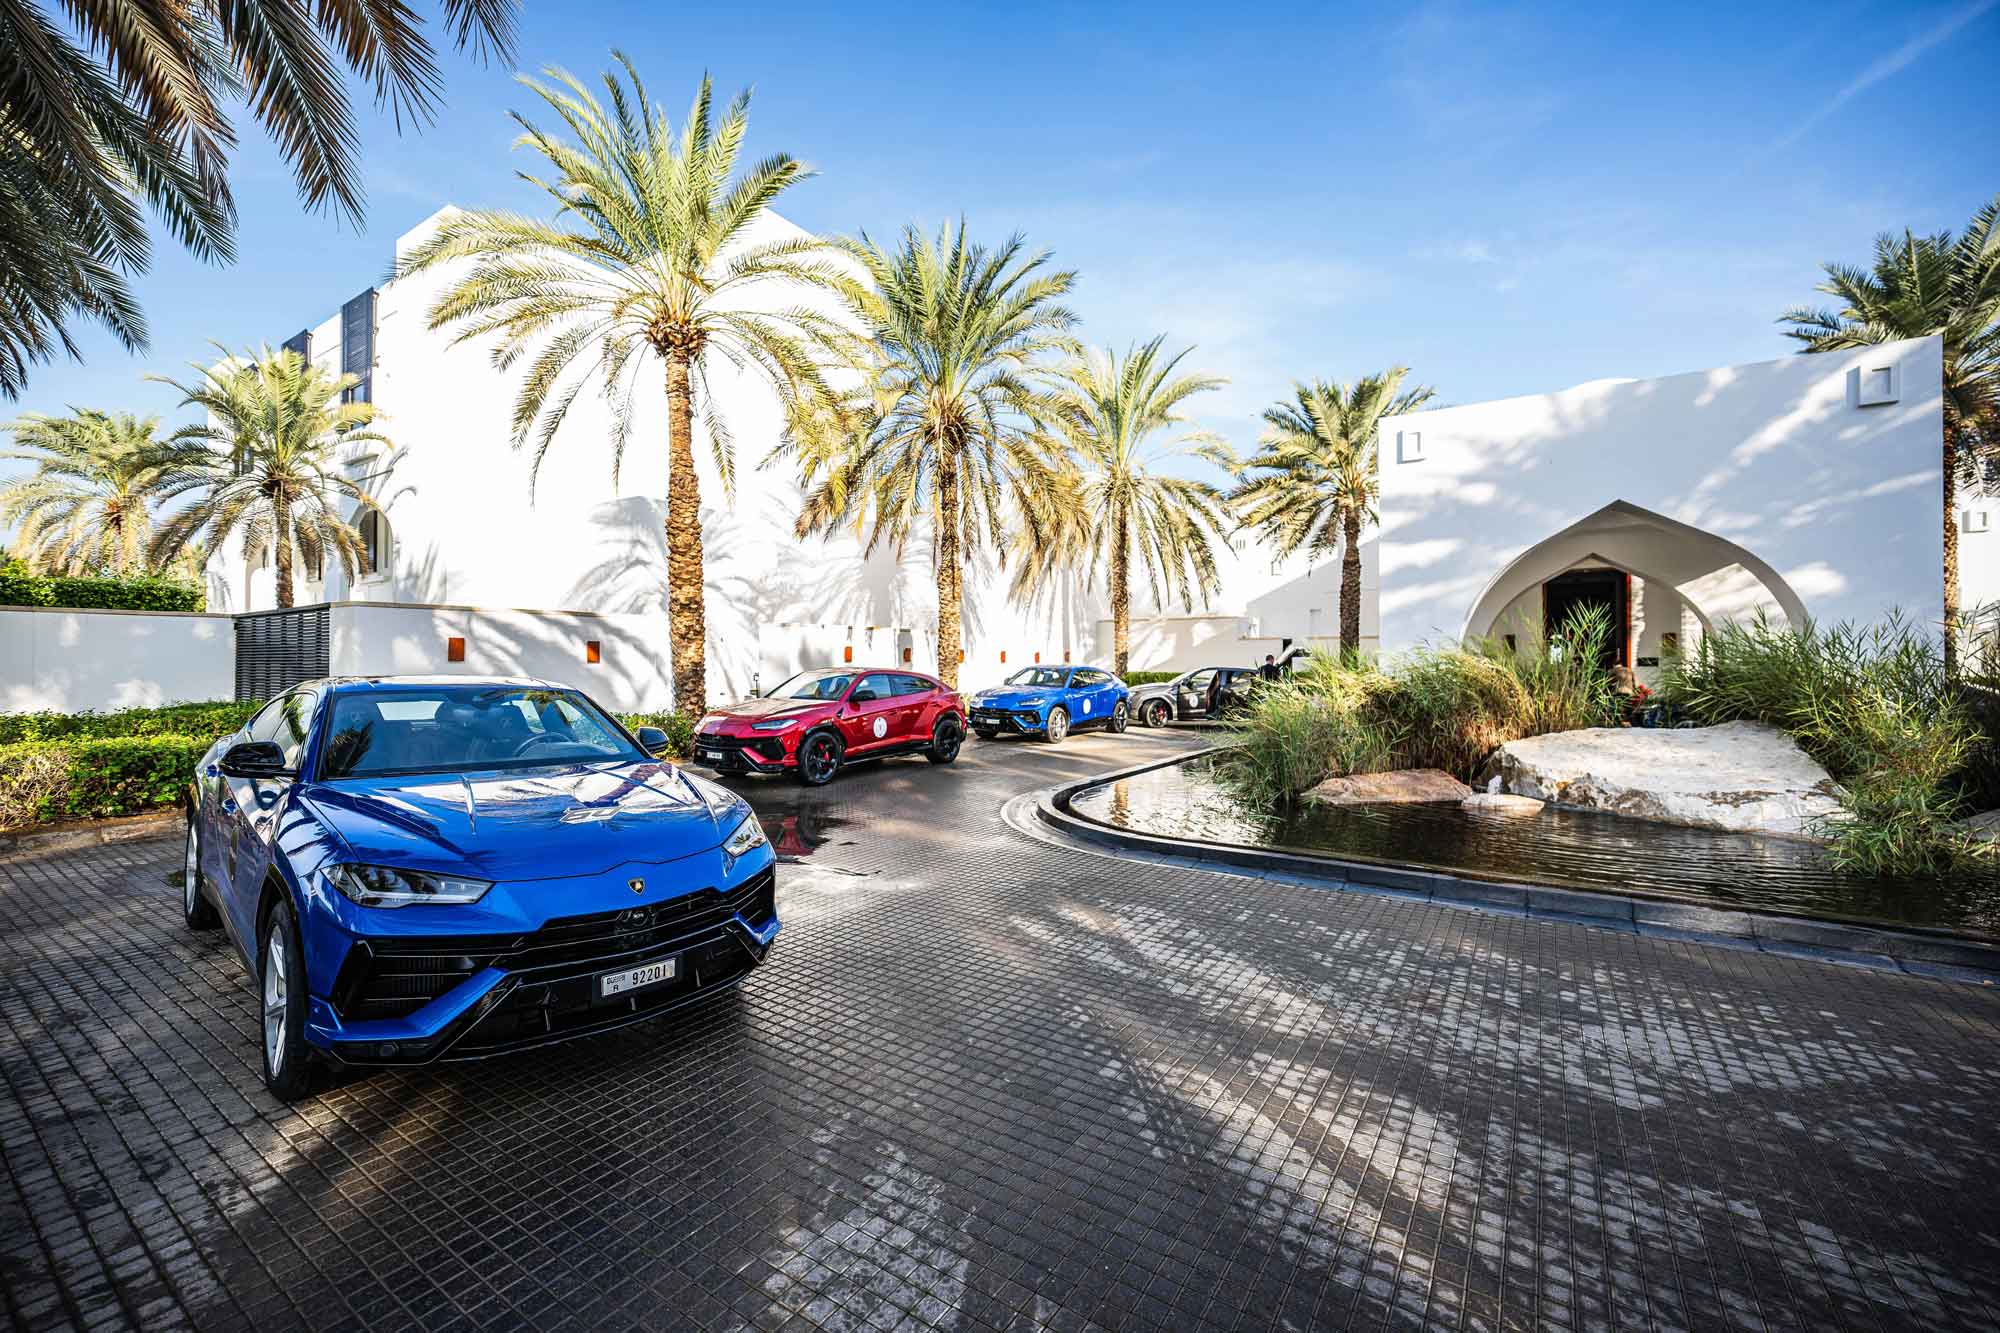 Blue and red Lamborghini Urus